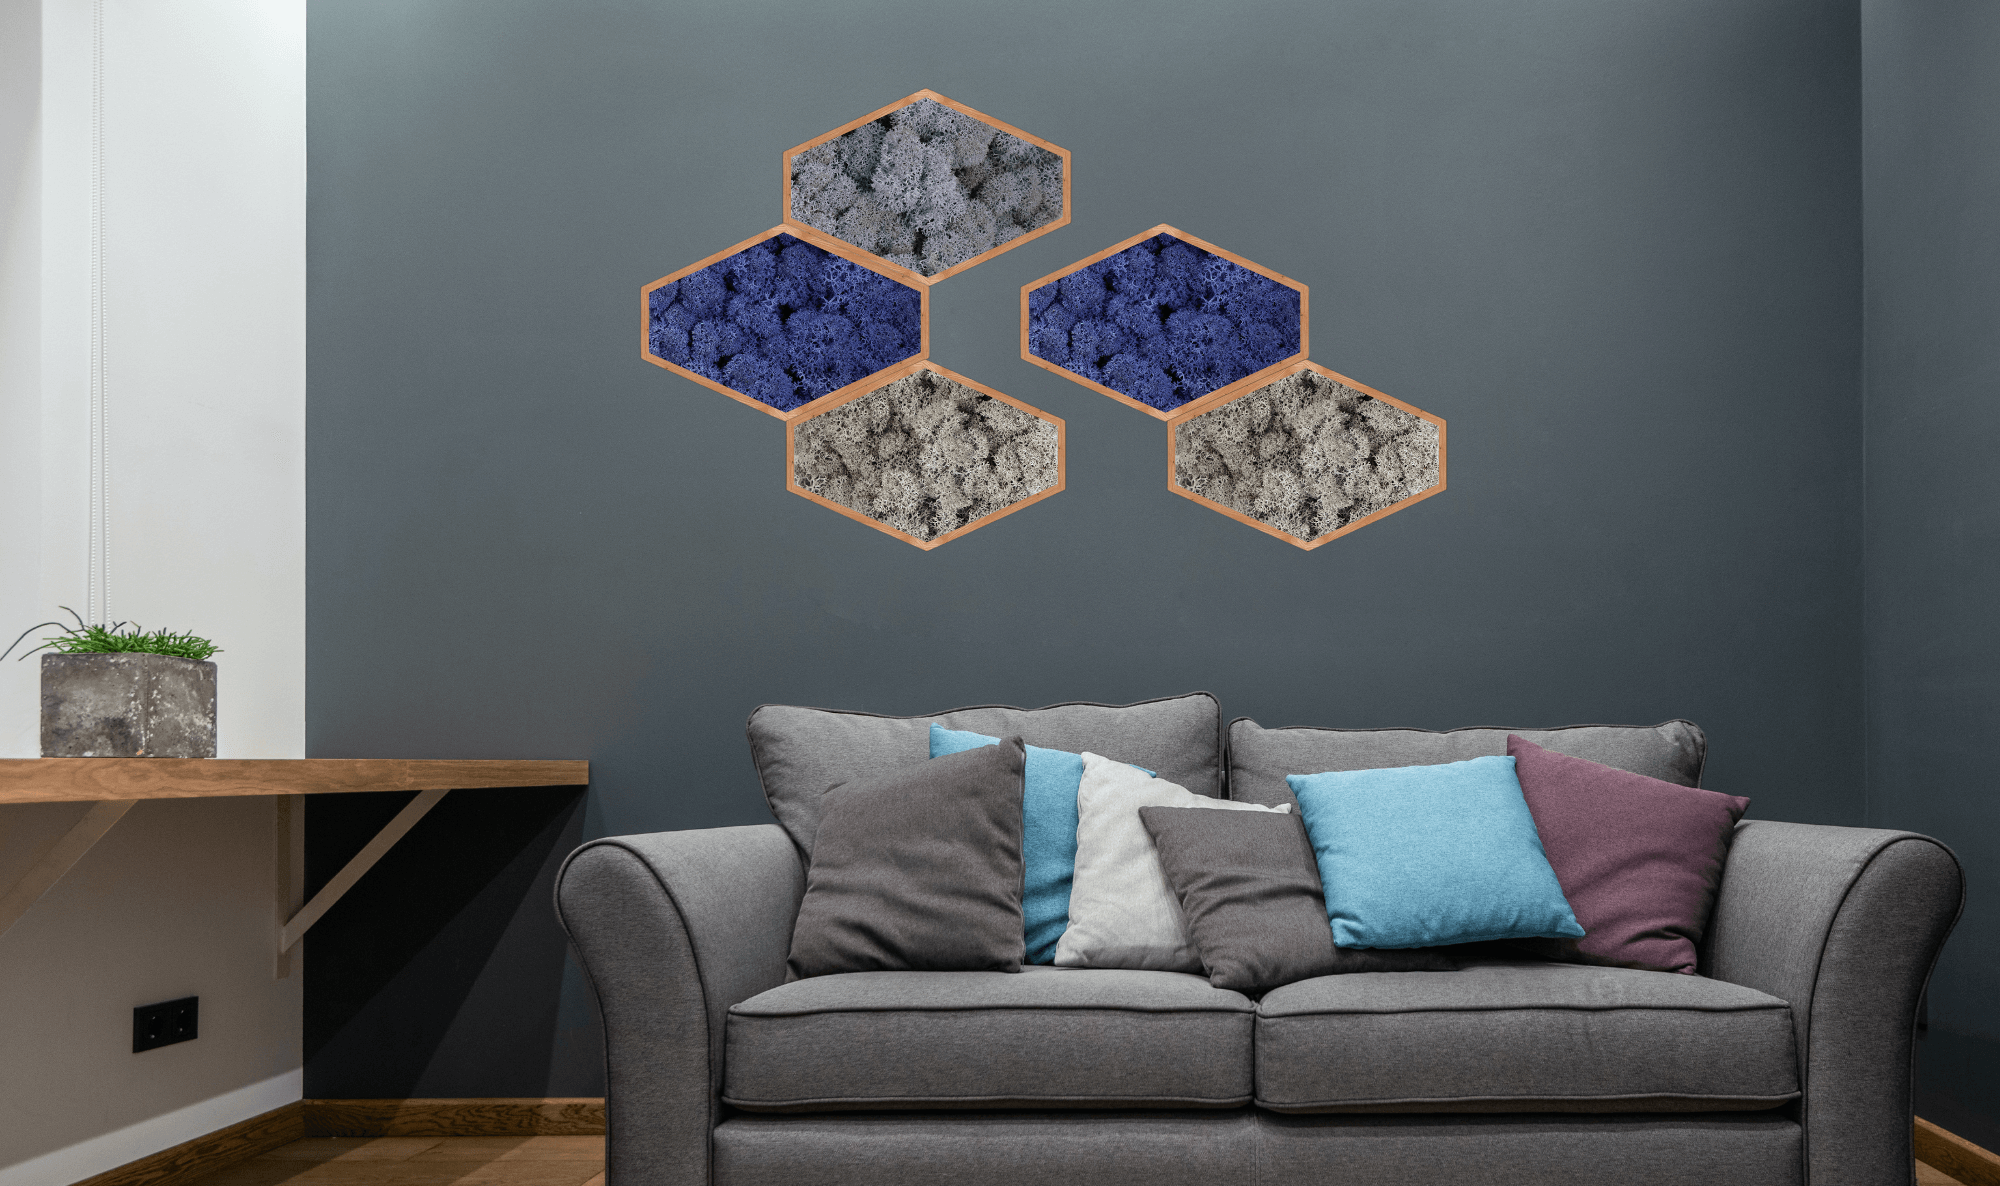 Décoration intérieure au design floral en lichen stabilisé, plantes naturelles stabilisées, dans une maison contemporaine. Tableau végétal stabilités, mosaïques accrochées au mur en lichen stabilisé bleu et gris. 